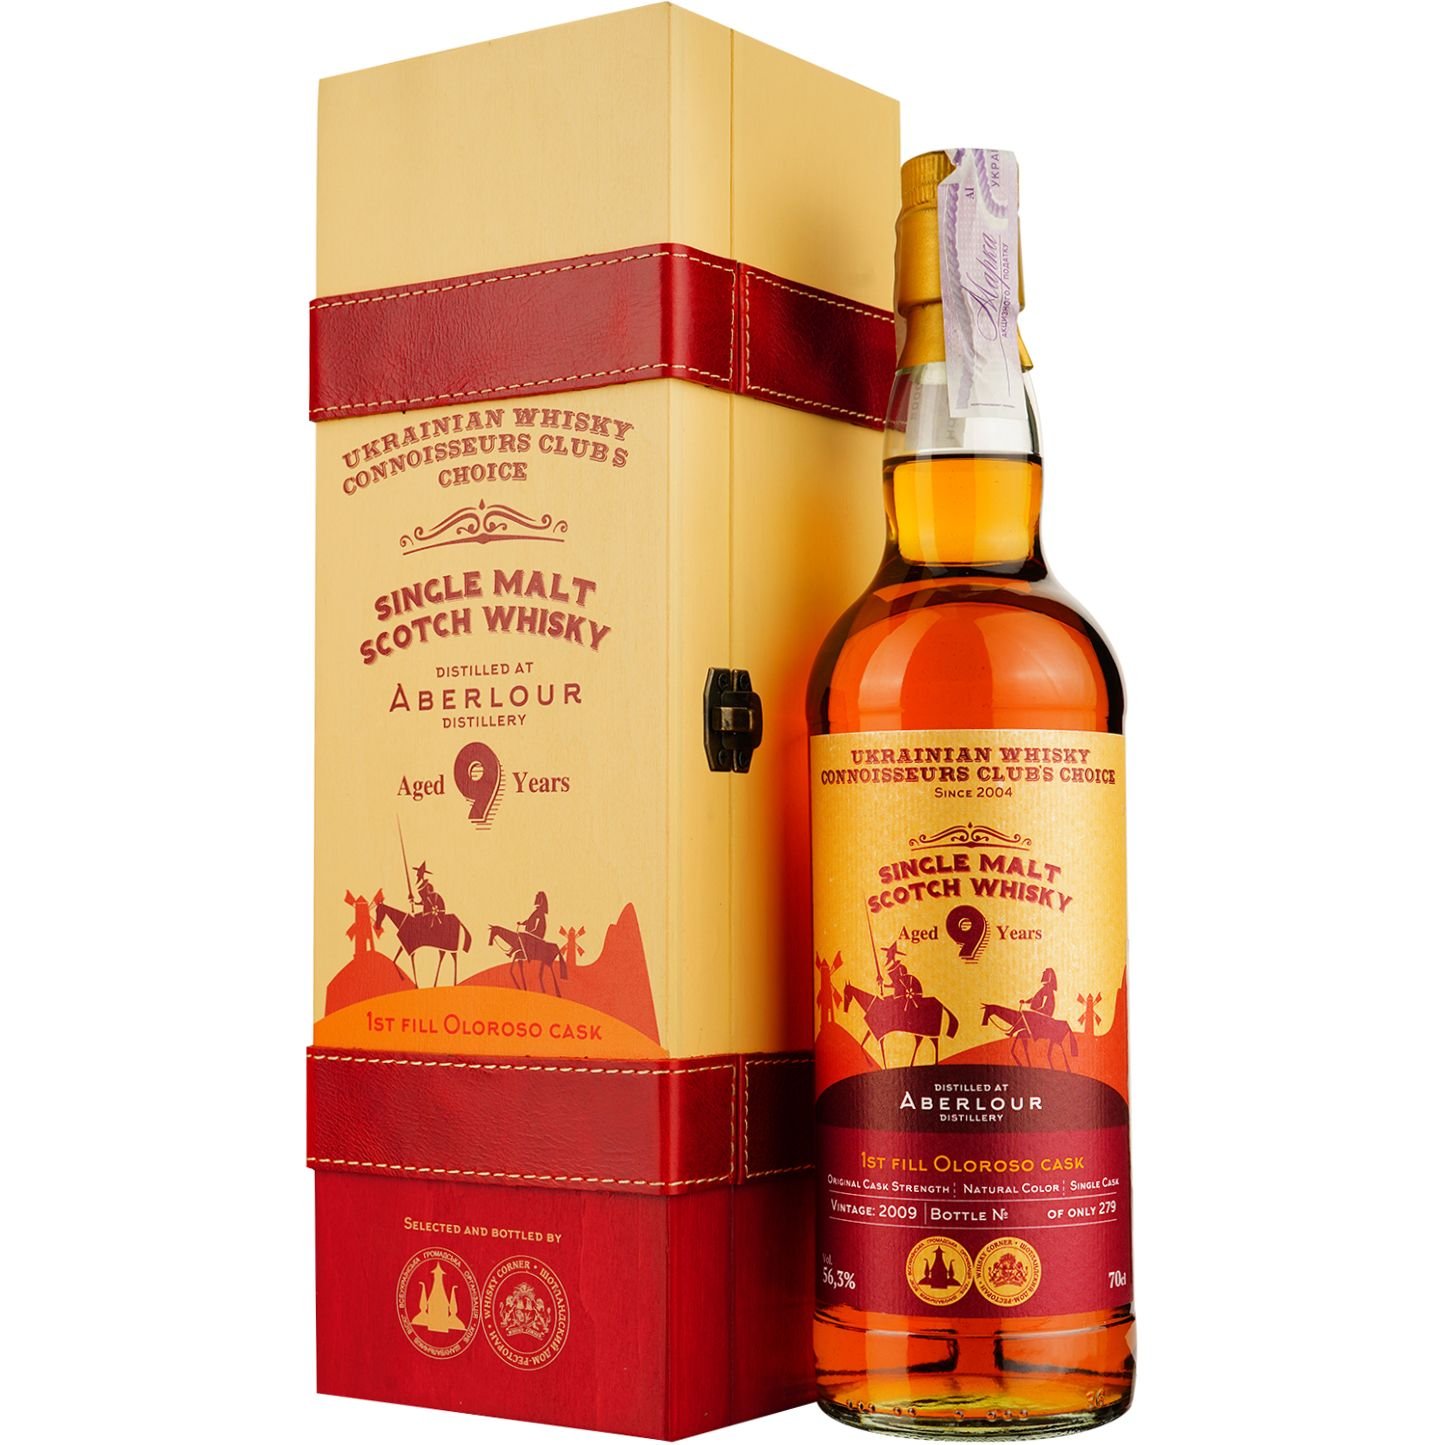 Віскі Aberlour 9 Years Old 1st Fill Oloroso Single Malt Scotch Whisky, у подарунковій упаковці, 56,3%, 0,7 л - фото 1